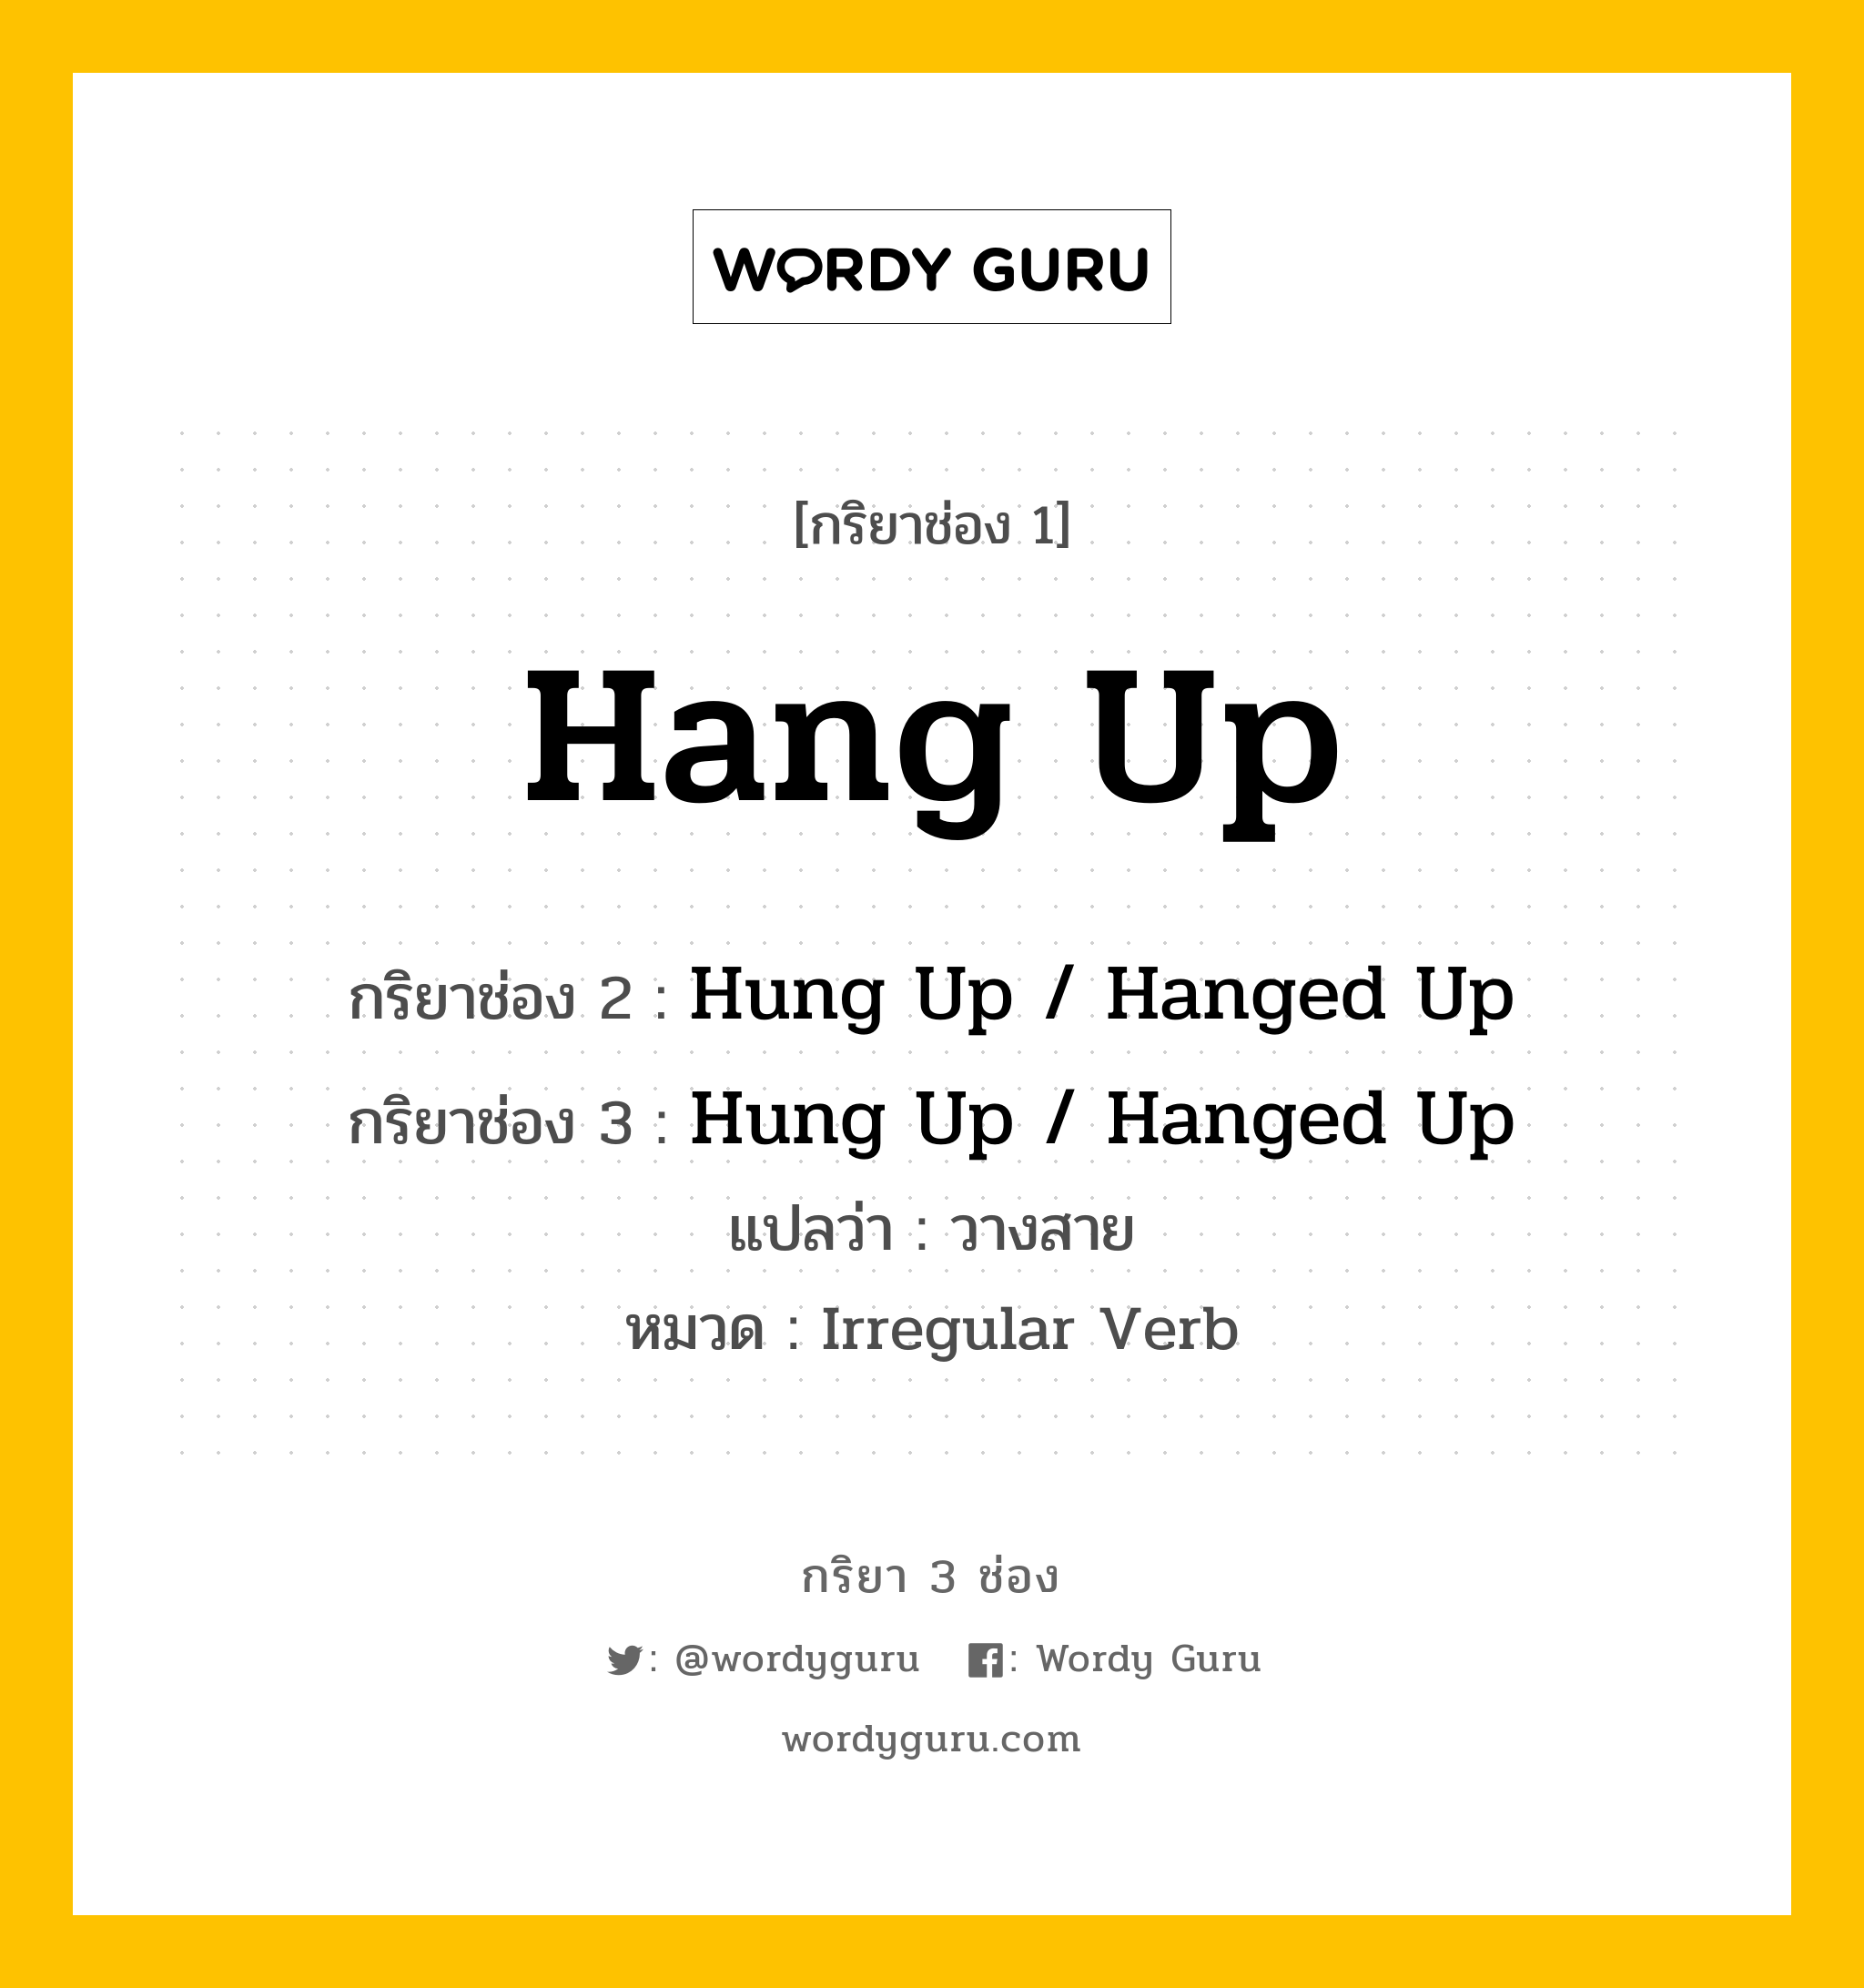 กริยา 3 ช่อง: Hang Up ช่อง 2 Hang Up ช่อง 3 คืออะไร, กริยาช่อง 1 Hang Up กริยาช่อง 2 Hung Up / Hanged Up กริยาช่อง 3 Hung Up / Hanged Up แปลว่า วางสาย หมวด Irregular Verb หมวด Irregular Verb